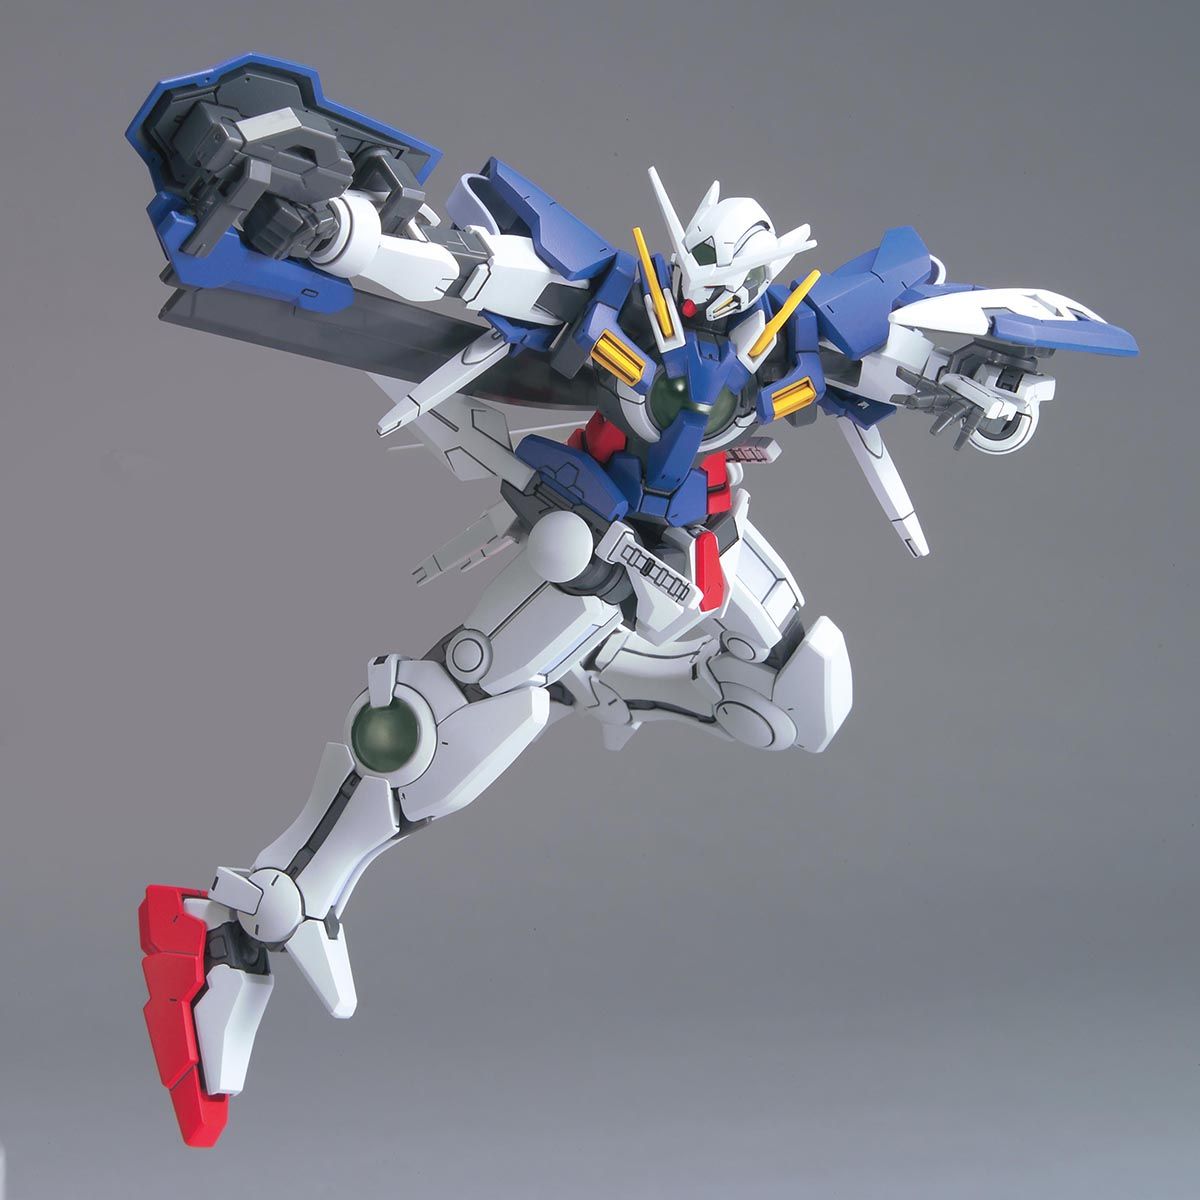 HG0O 1/144 No.01 GN-001 Gundam Exia